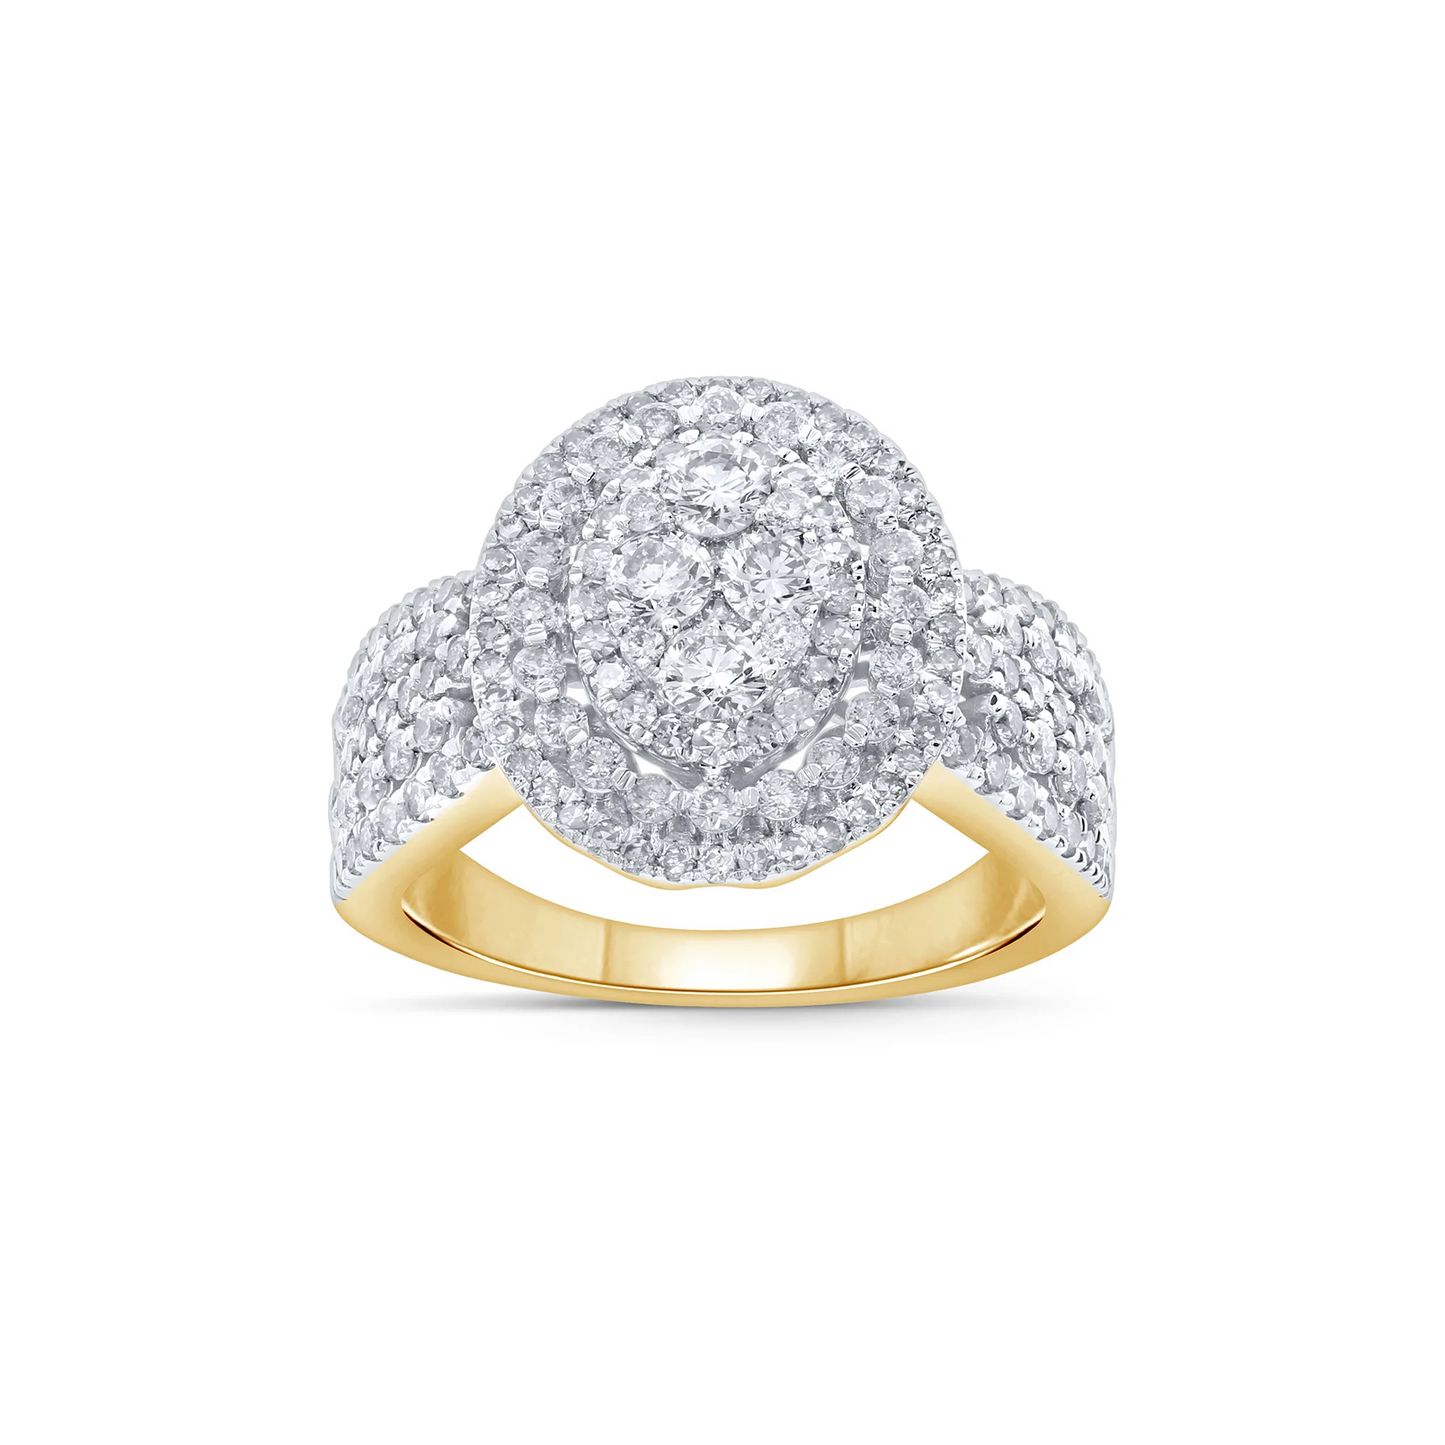 10K YELLOW GOLD 1.75 CARAT WOMEN REAL DIAMOND ENGAGEMENT RING WEDDING RING BRIDAL / SKU RG21633-YG